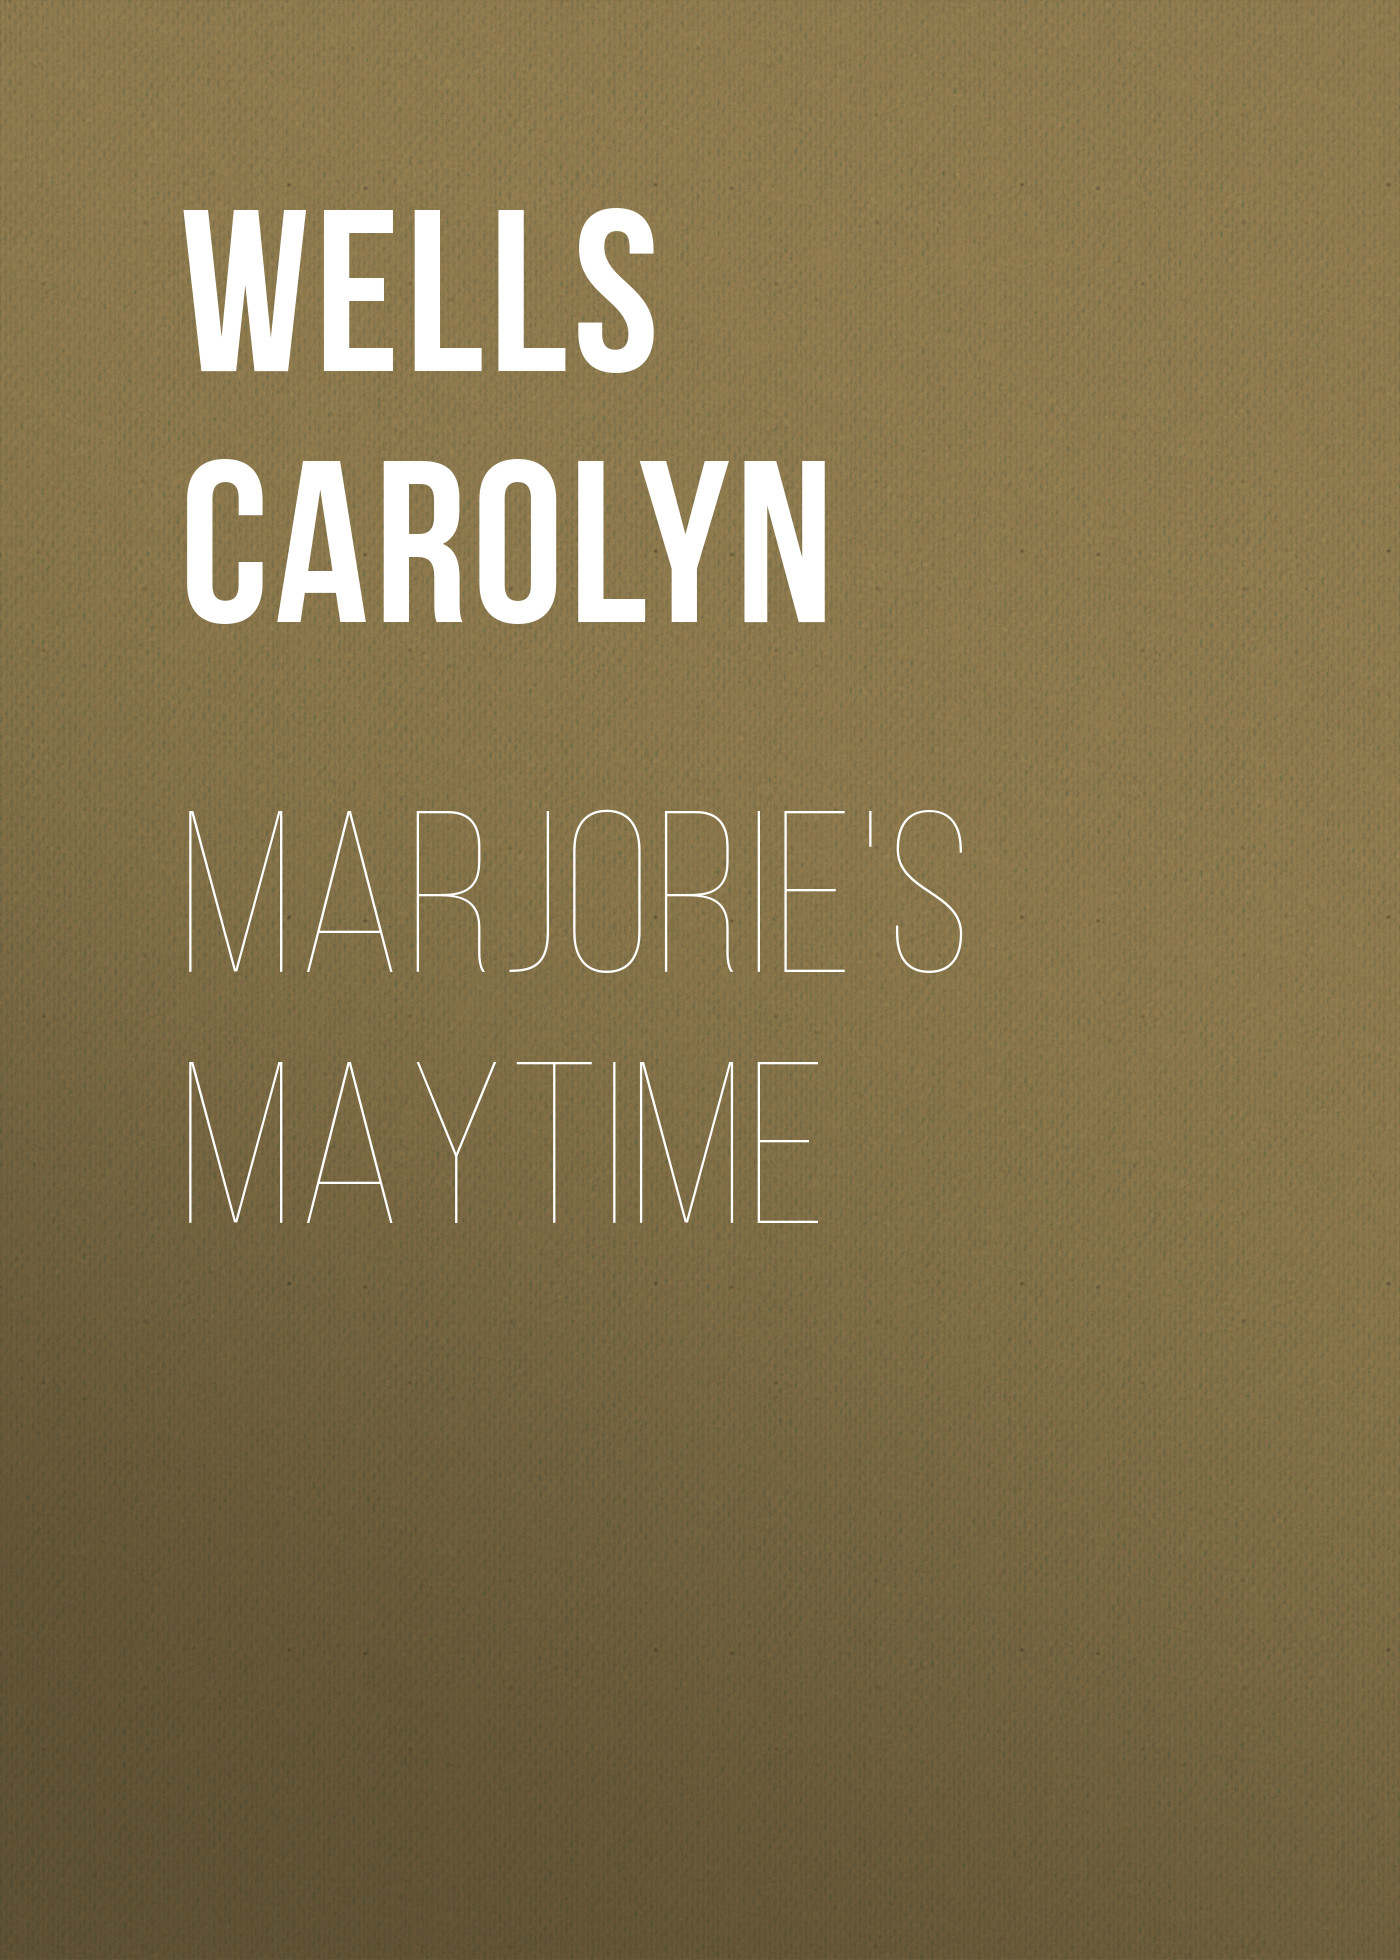 Книга Marjorie's Maytime из серии , созданная Carolyn Wells, может относится к жанру Детские приключения, Зарубежная старинная литература, Зарубежная классика, Зарубежные детские книги. Стоимость электронной книги Marjorie's Maytime с идентификатором 36323324 составляет 0 руб.